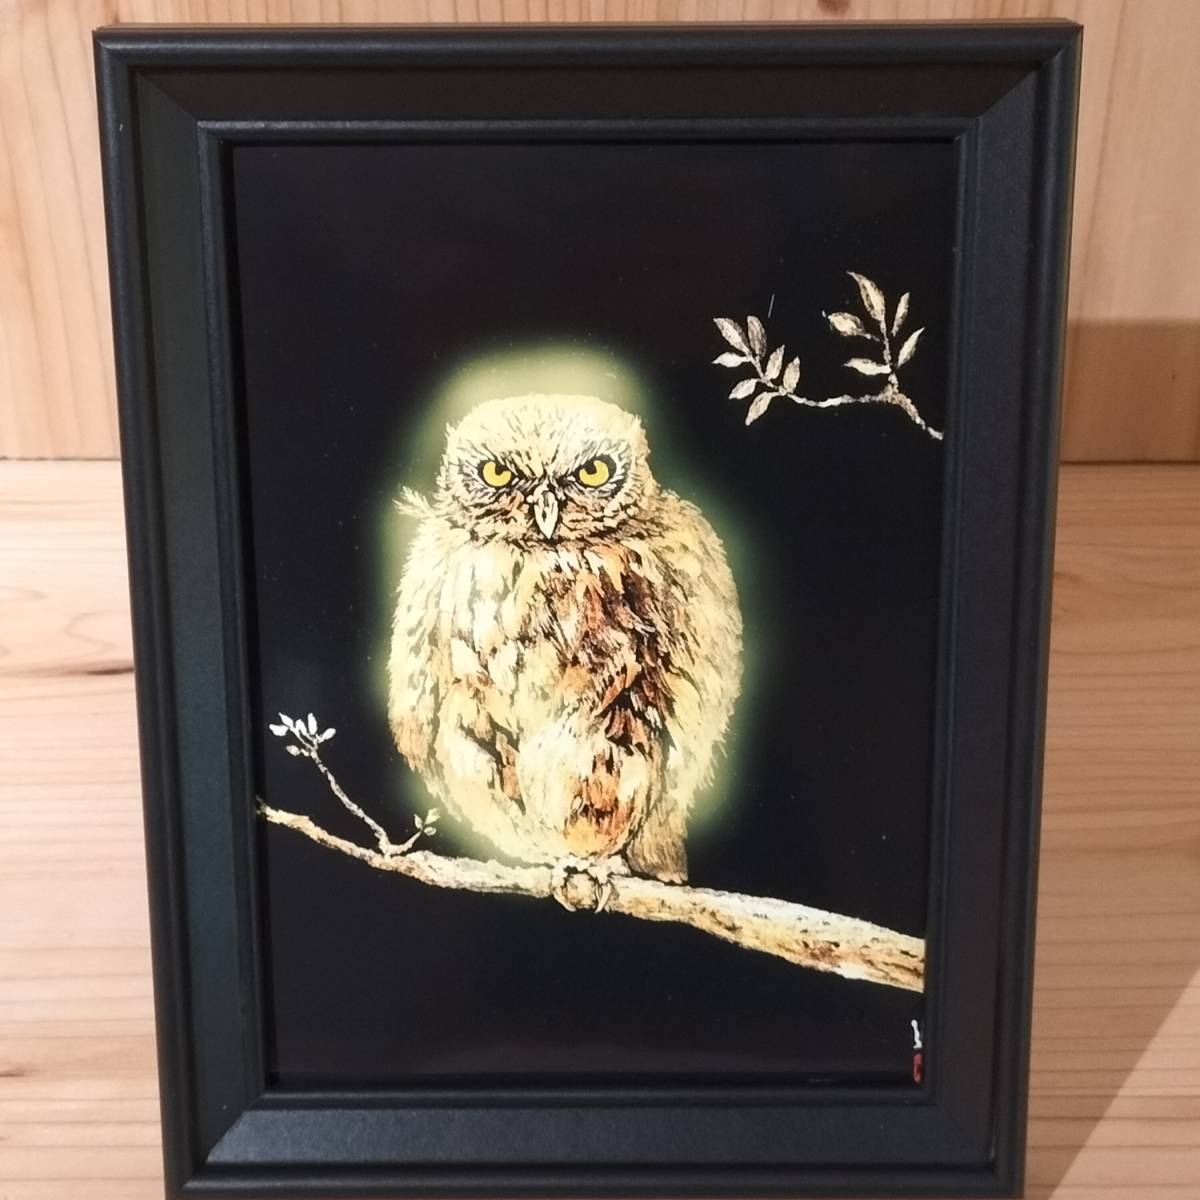 当代水墨画家☆艺术家 Hakudou Golden Owl(复制品)2L 签名/当代艺术 Hakudou 绘画免费送货♪, 艺术品, 绘画, 其他的